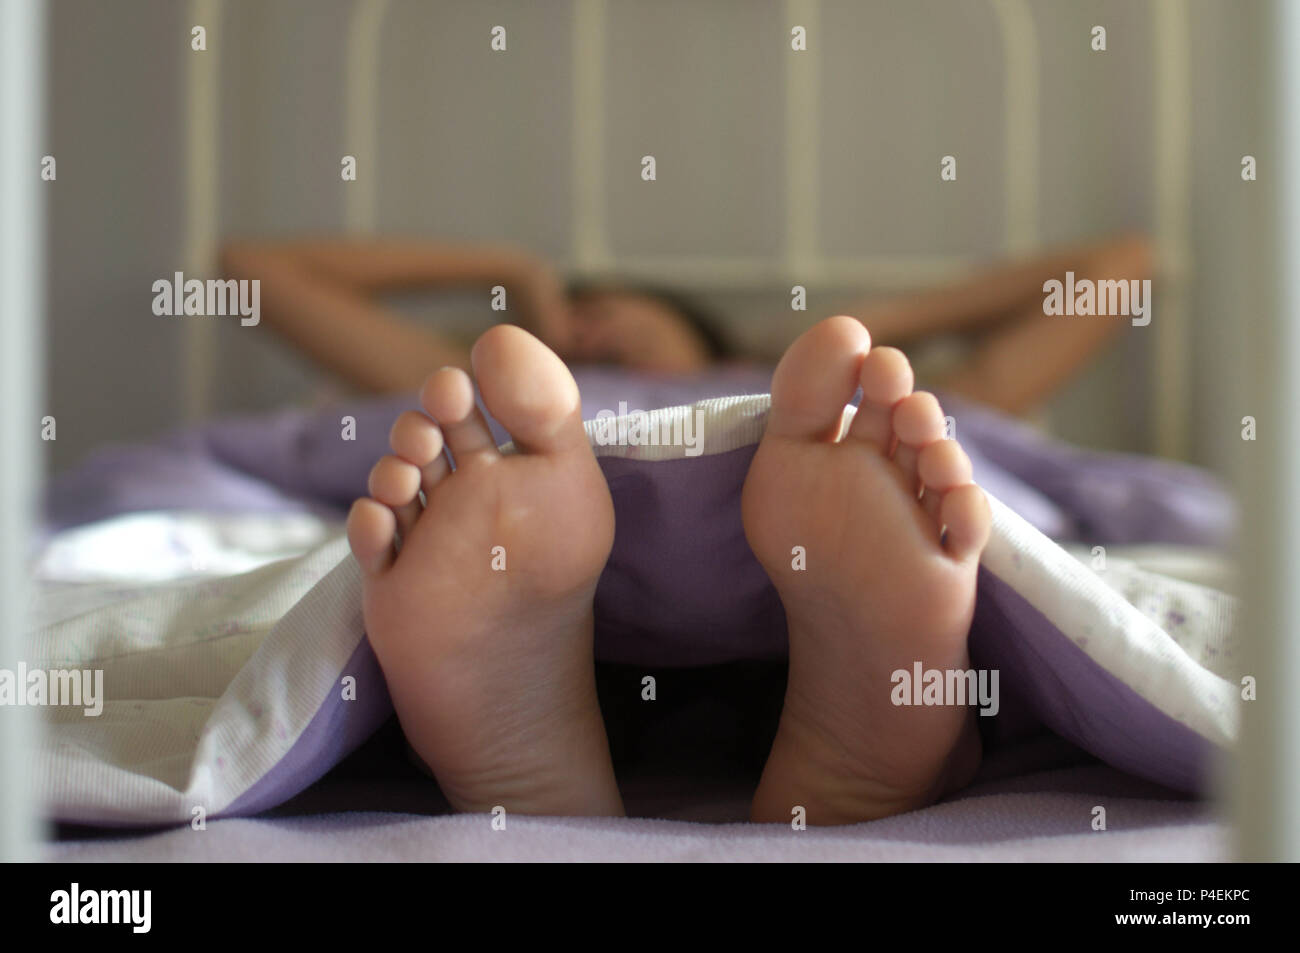 Ragazza adolescente giacente in letto risveglio Foto Stock